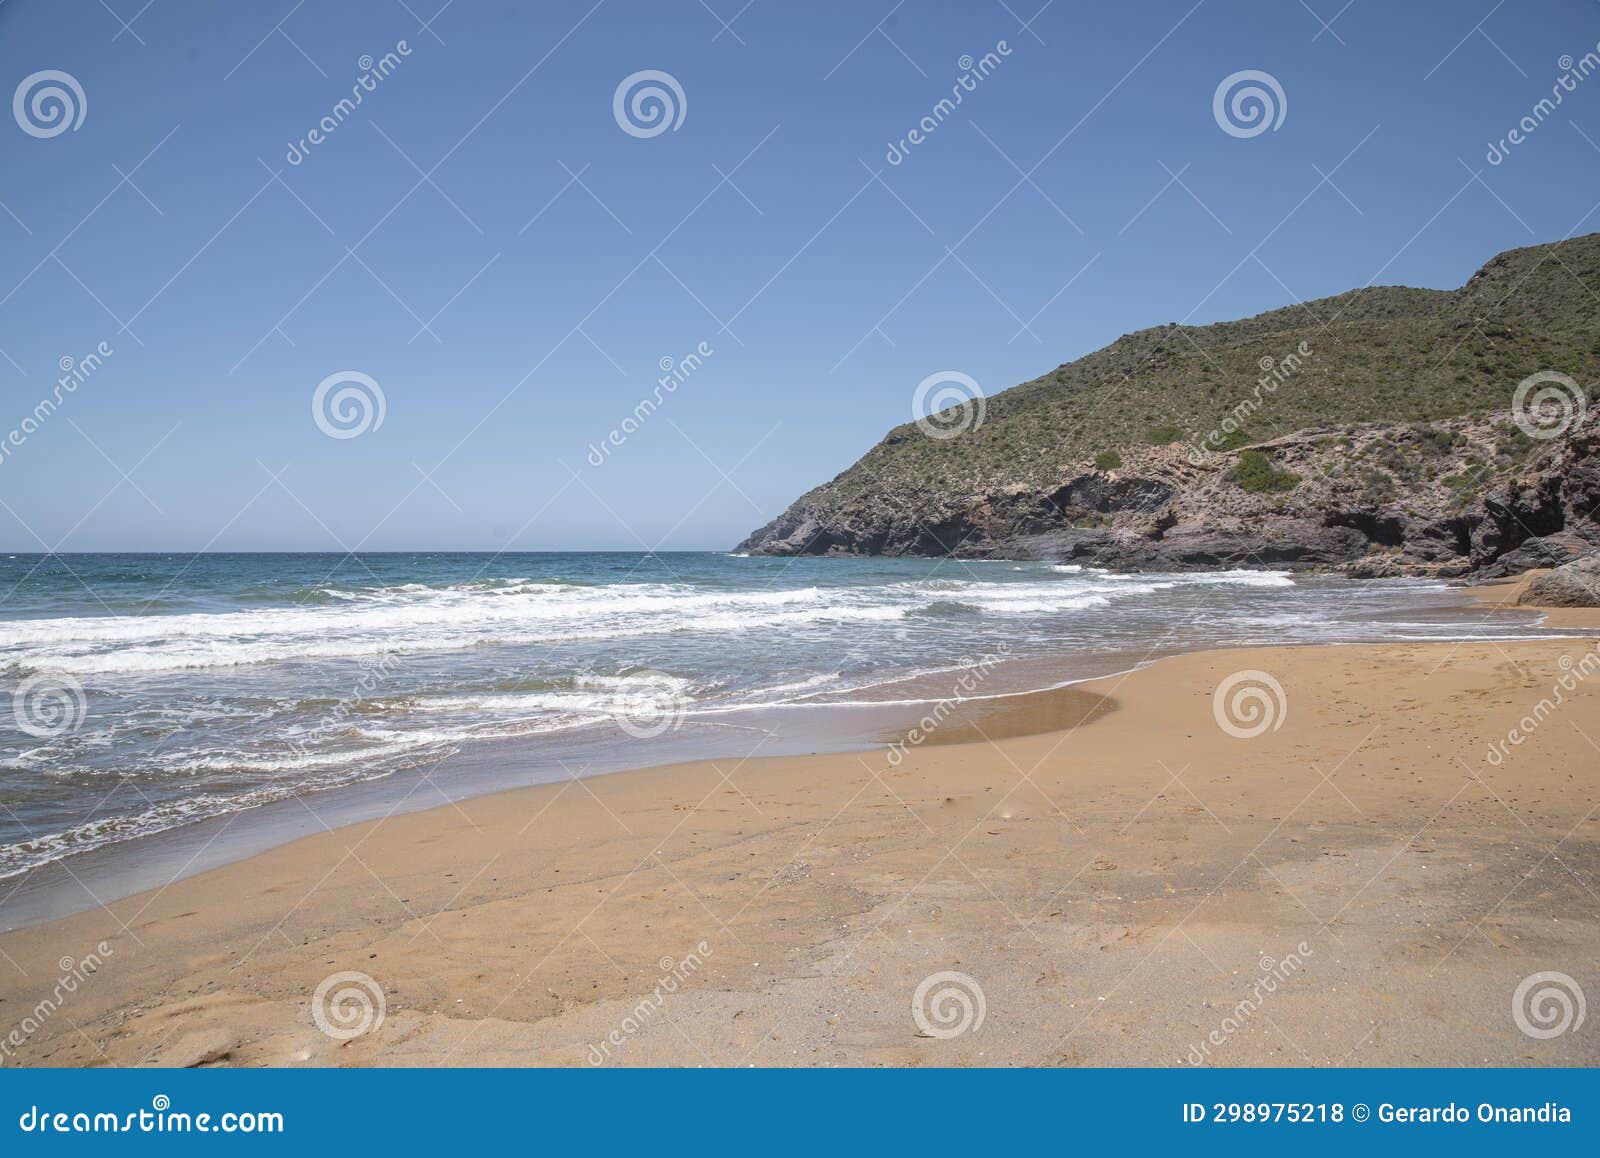 beaches of the calblanque regional park, cartagena,